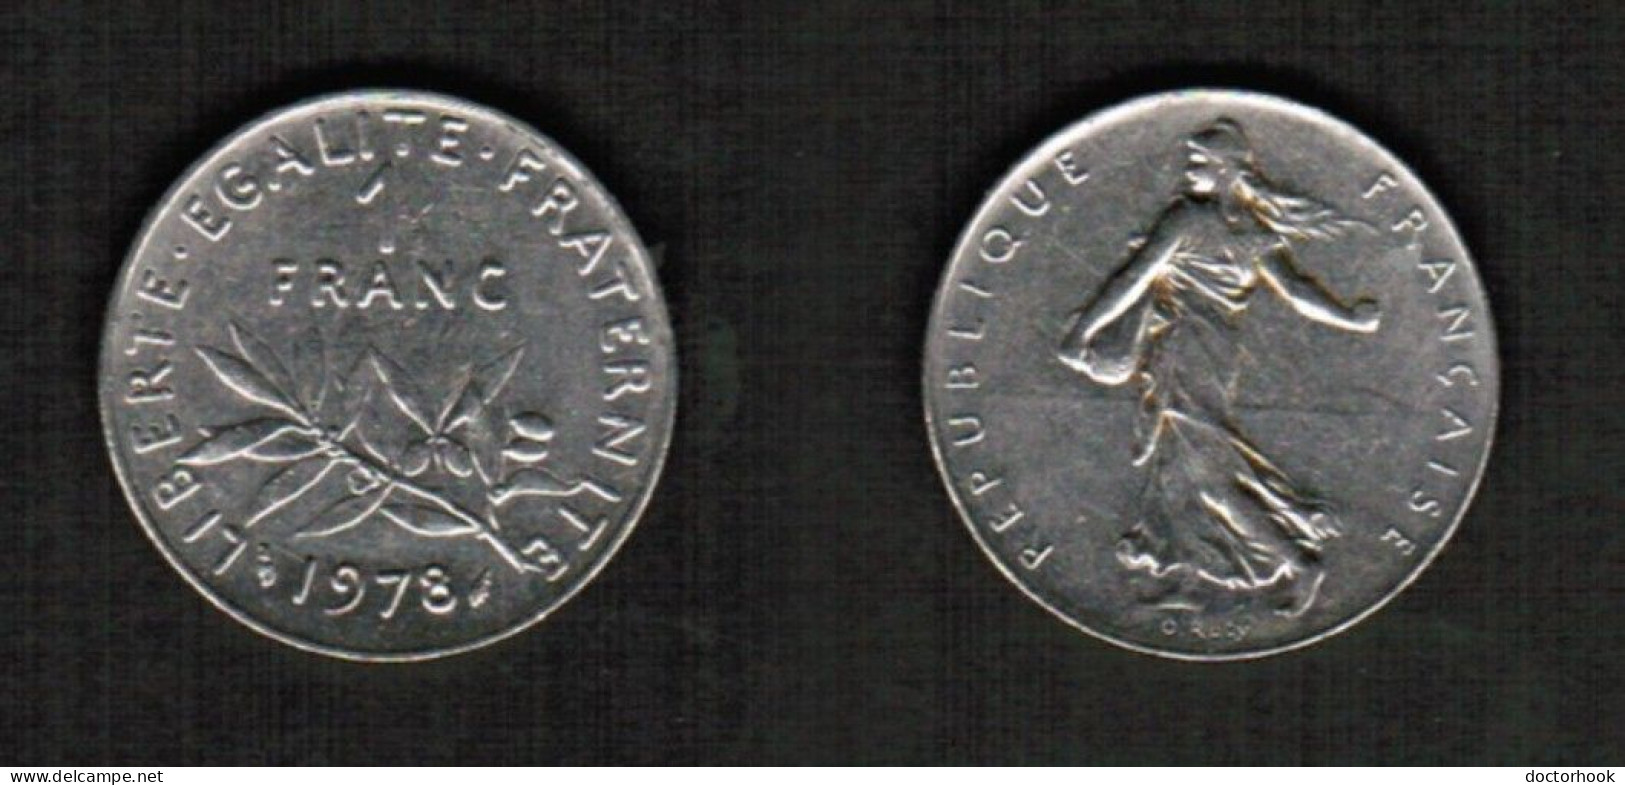 FRANCE   1 FRANC 1978 (KM # 925.1) #7812 - 1 Franc